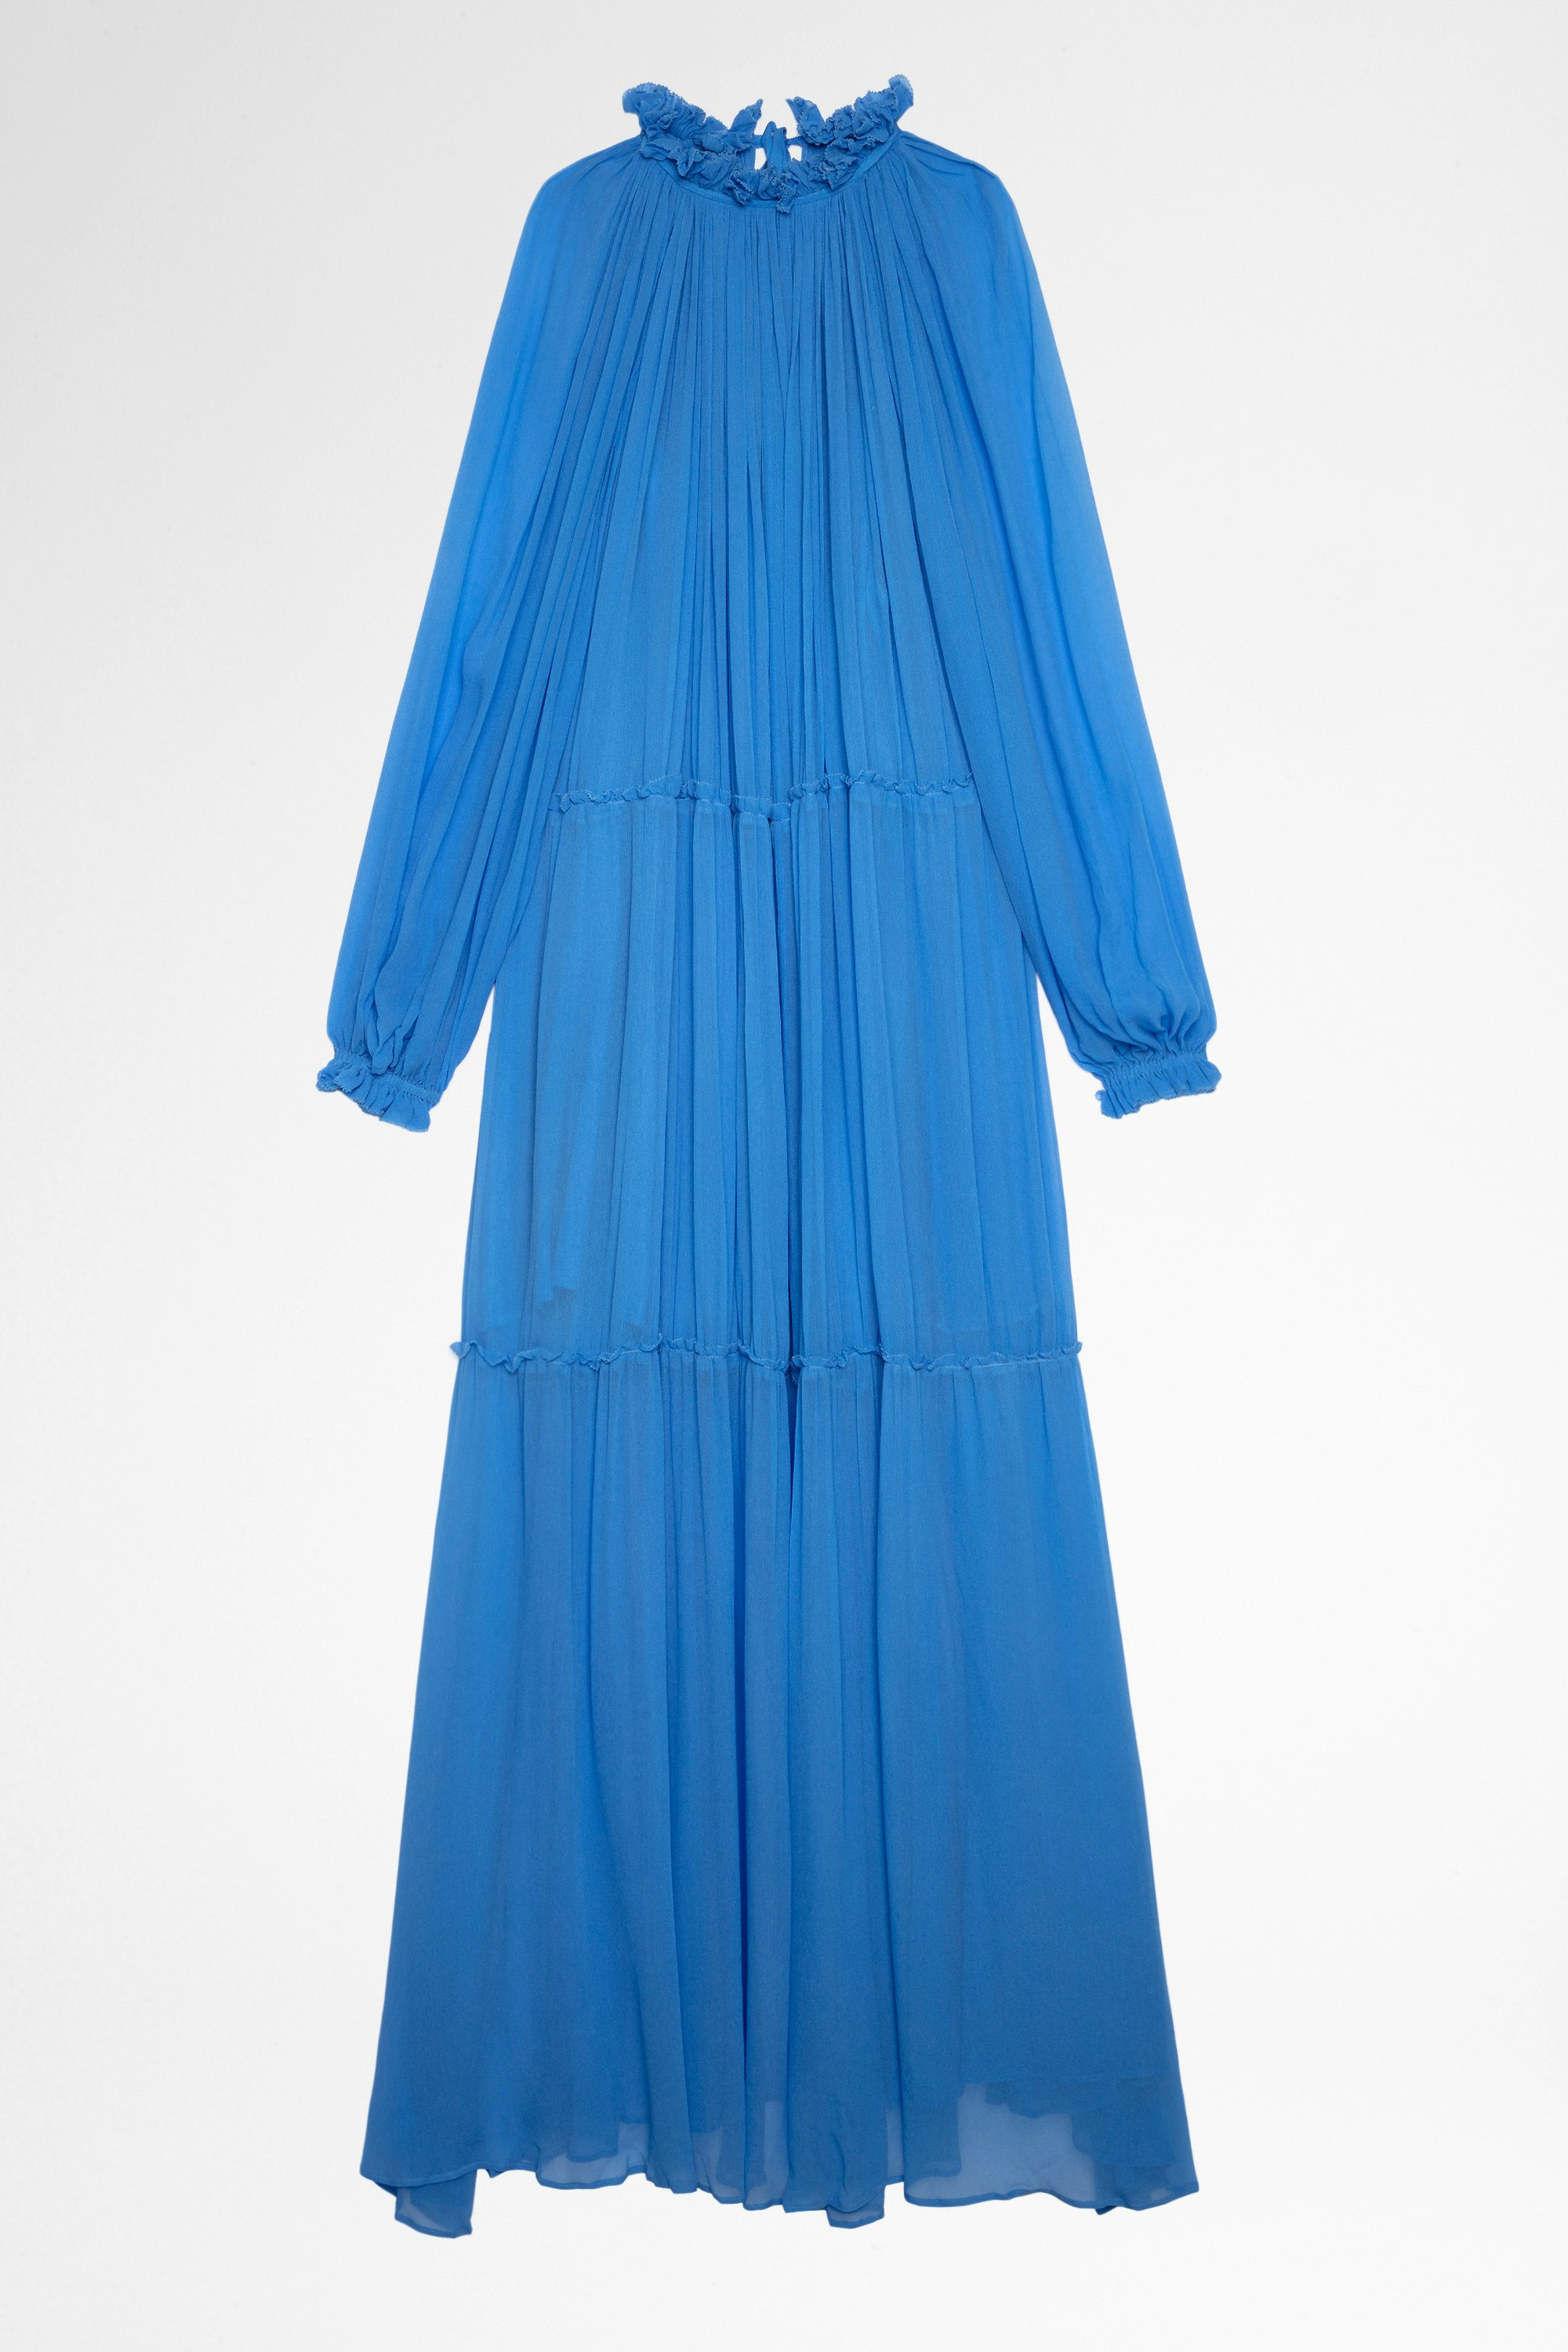 Razzia Dress Women's long-sleeved dress in sky-blue